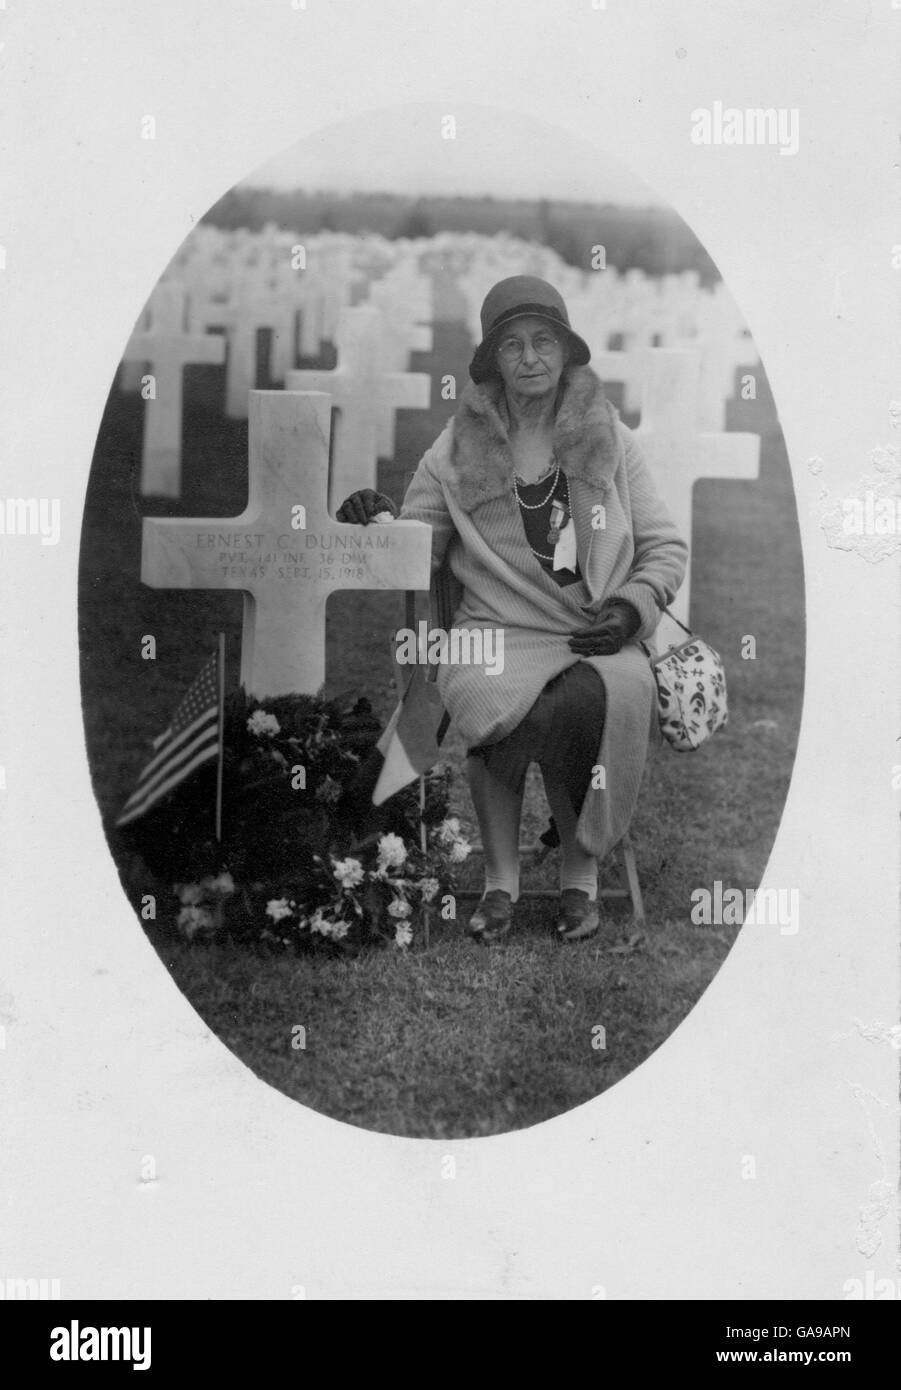 Maria Carlotta Dunnam, su una stella in oro che le madri e le vedove pellegrinaggio, visita la tomba di suo figlio, Ernest C. Dunnam, ucciso in azione in Francia il 15 settembre 1918. Foto Stock